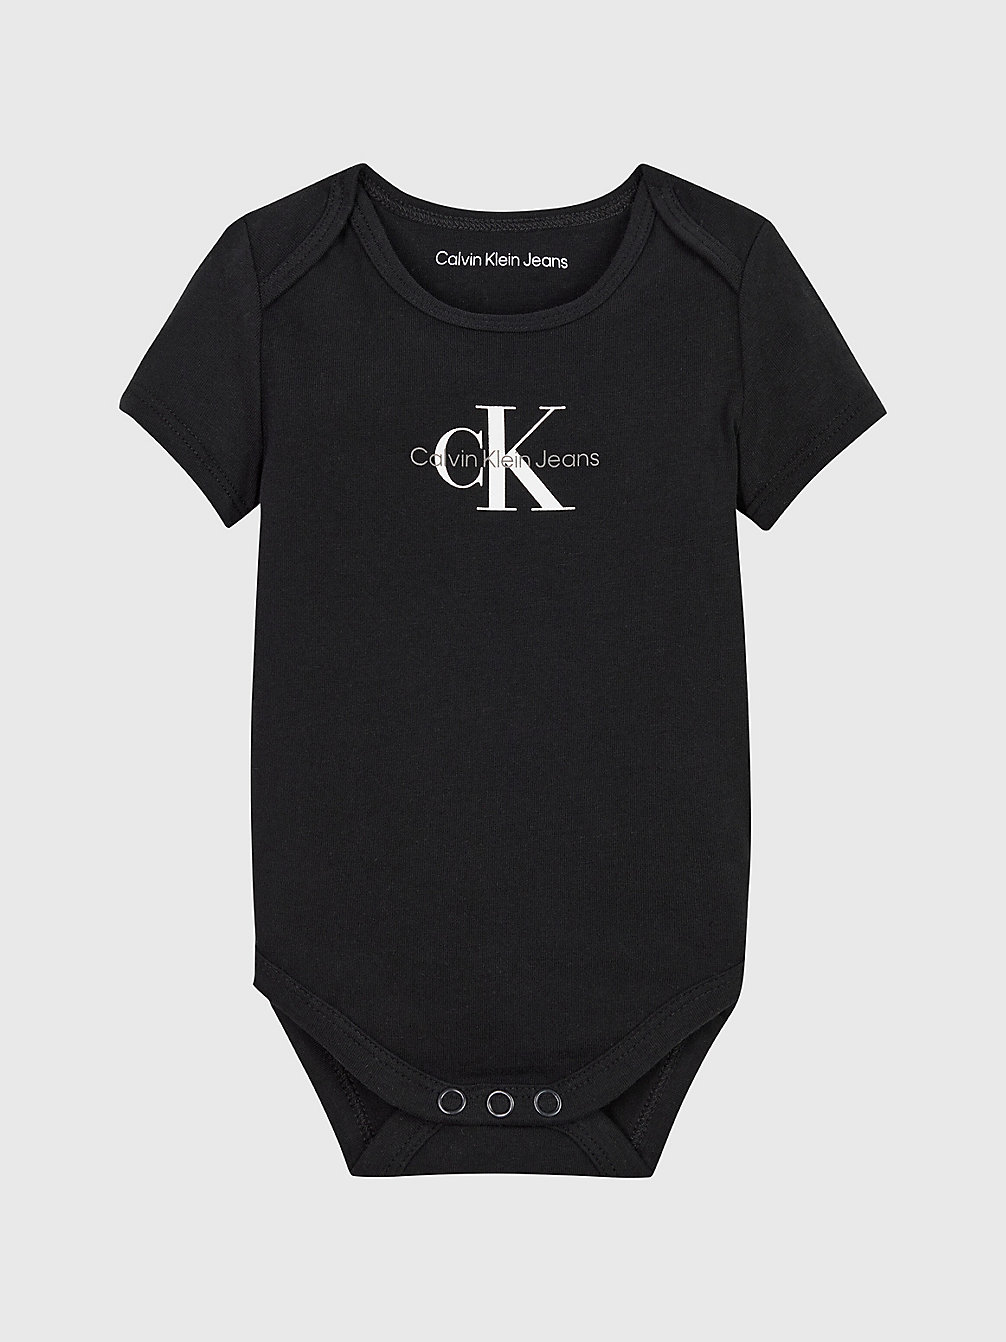 CK BLACK Logo-Baby-Body undefined newborn Calvin Klein